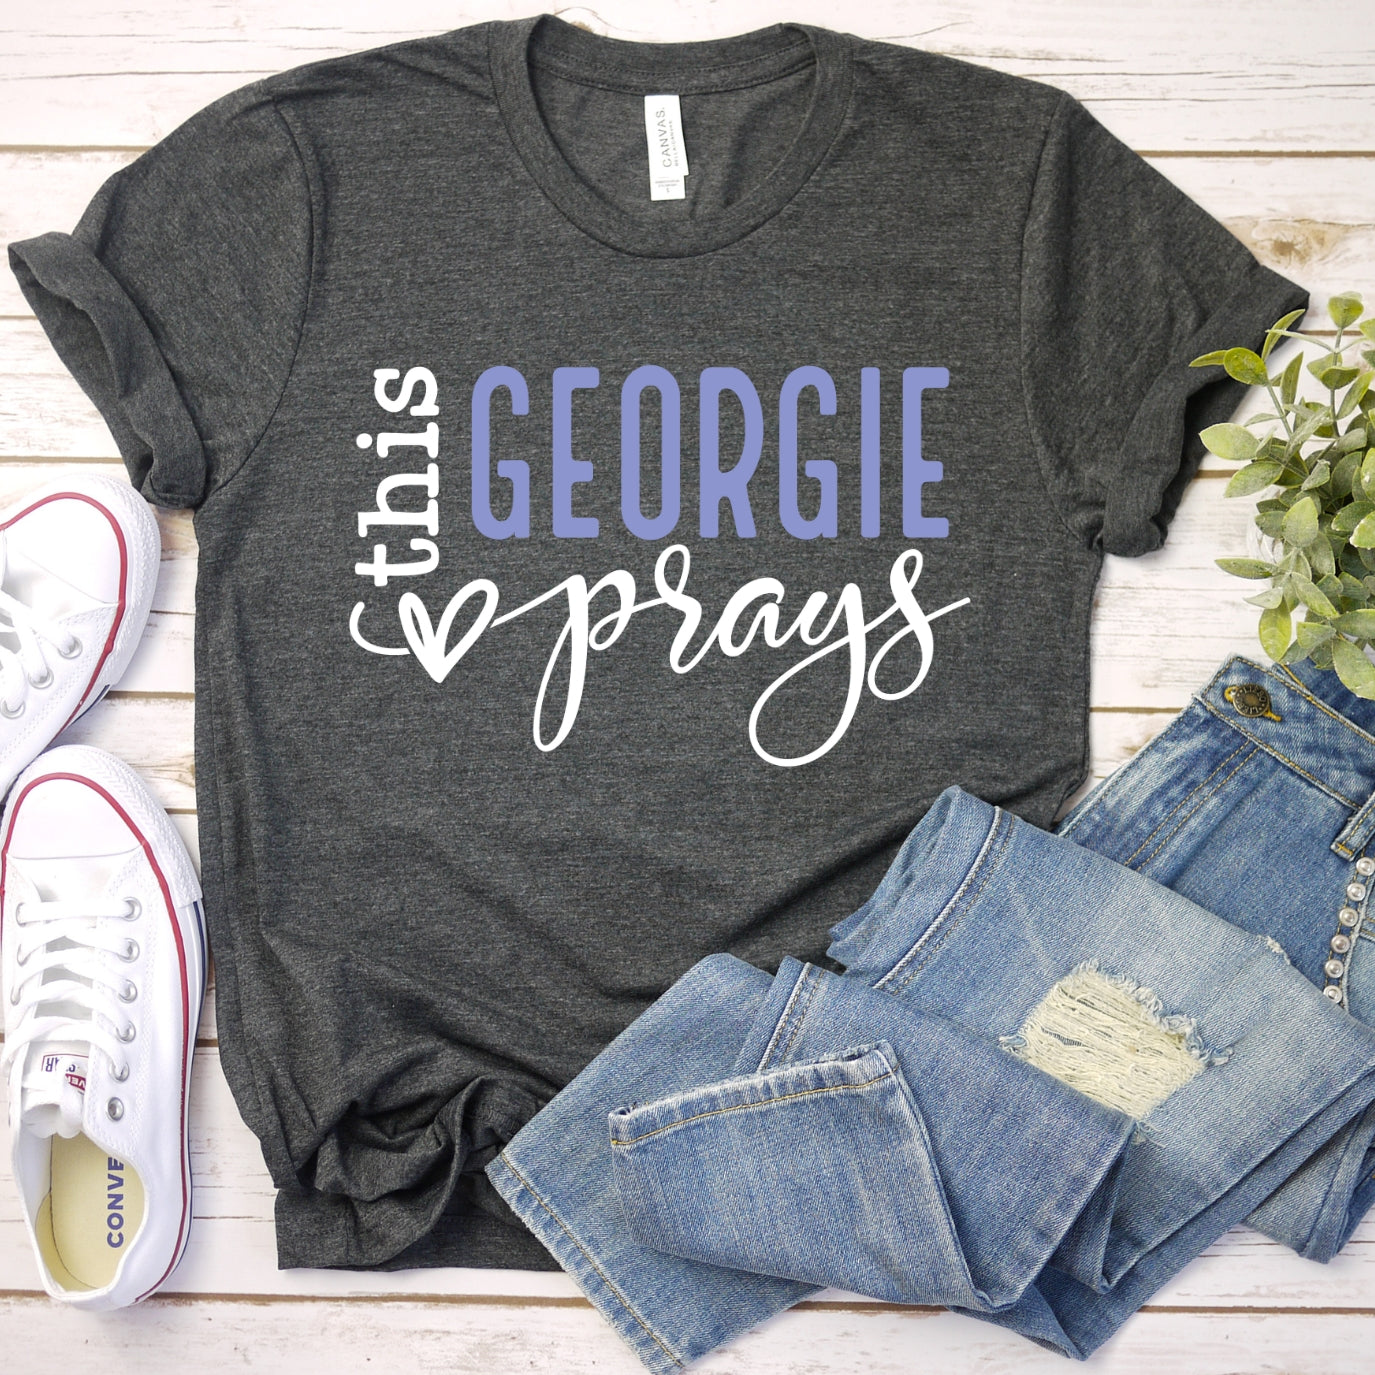 This Georgie Prays Women's T-Shirt